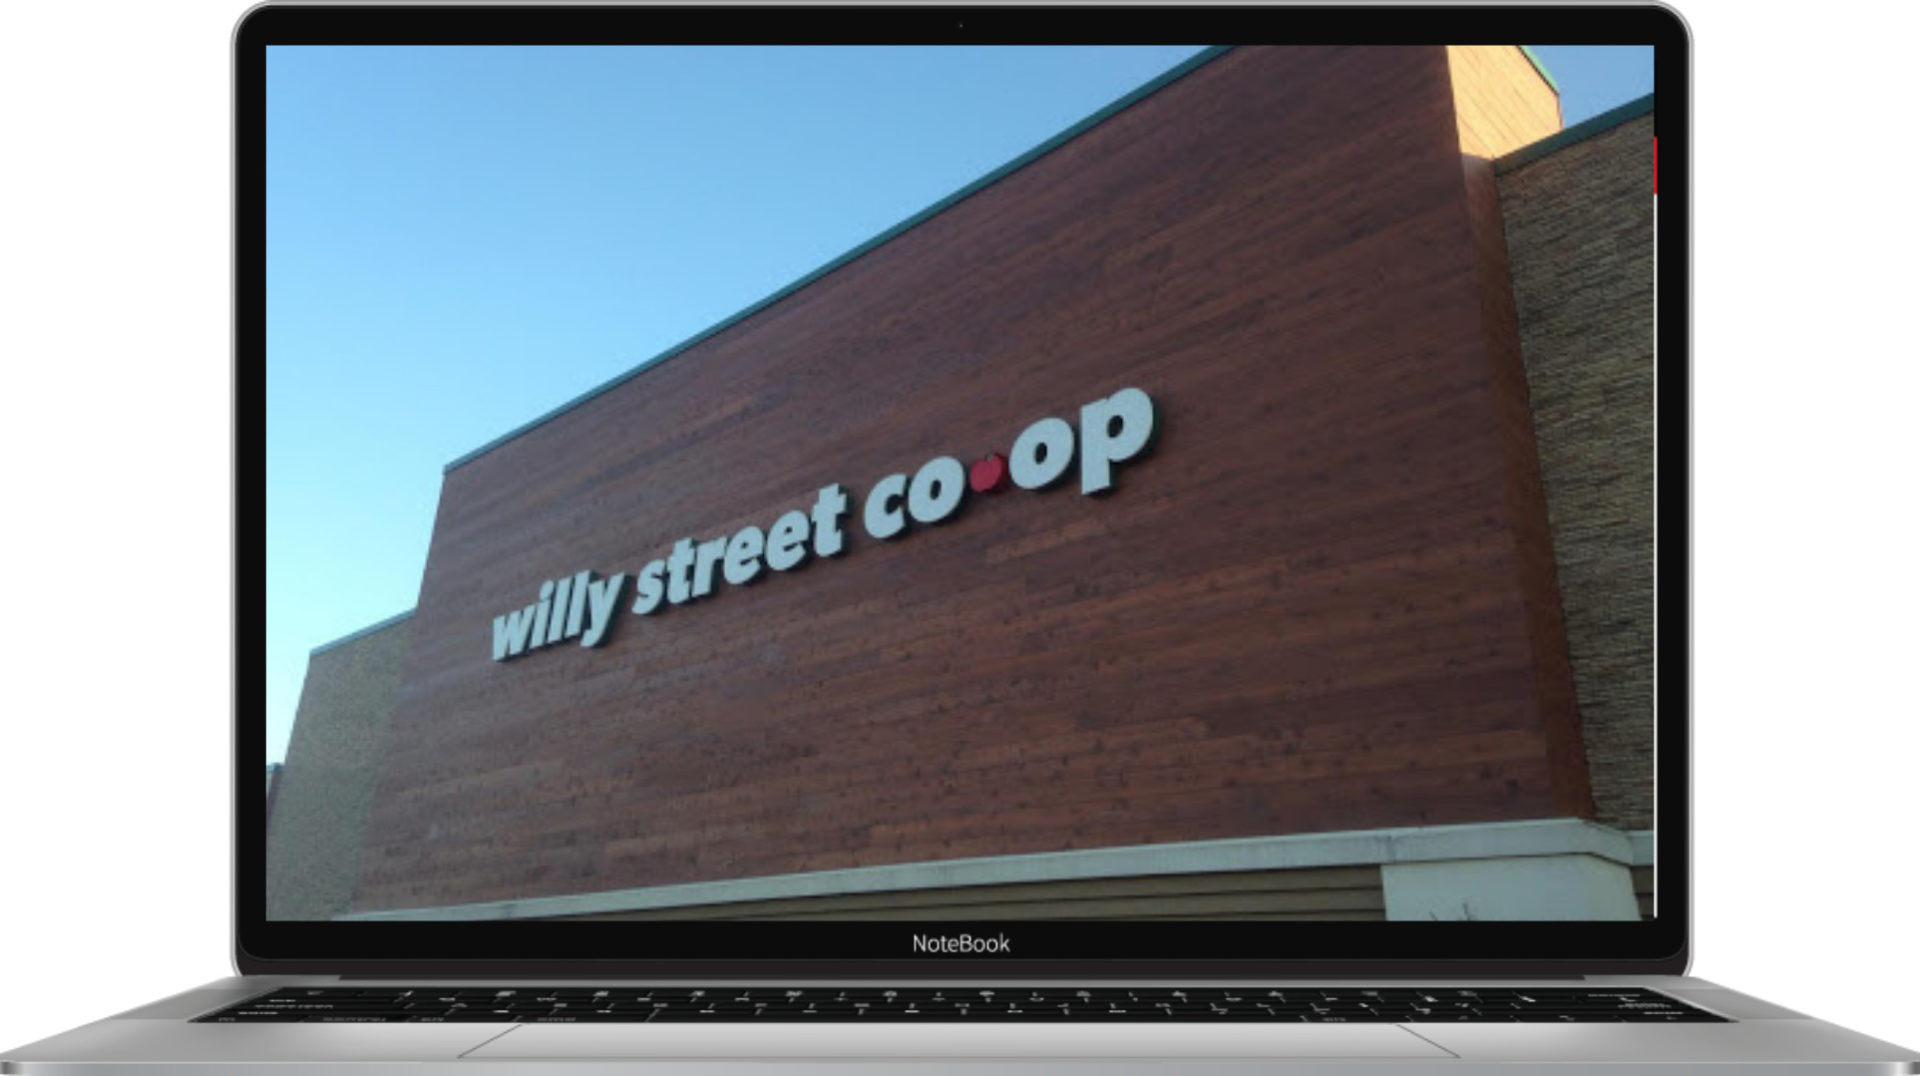 Willy Street Co-op laptop